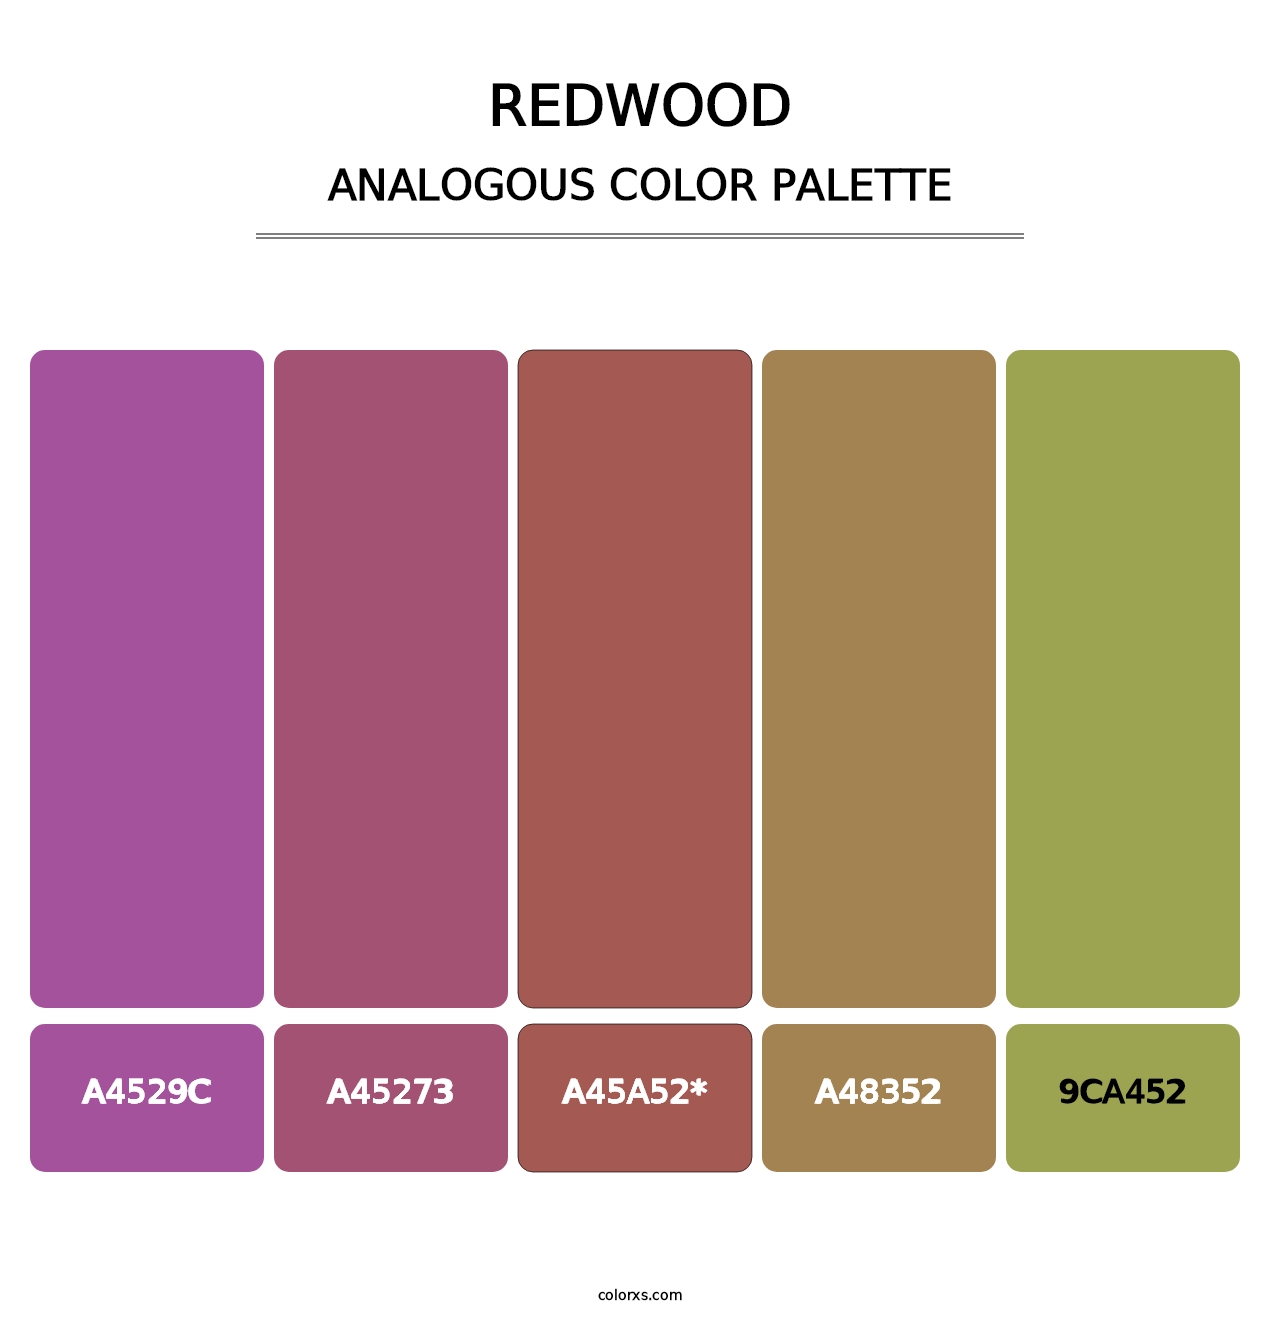 Redwood - Analogous Color Palette